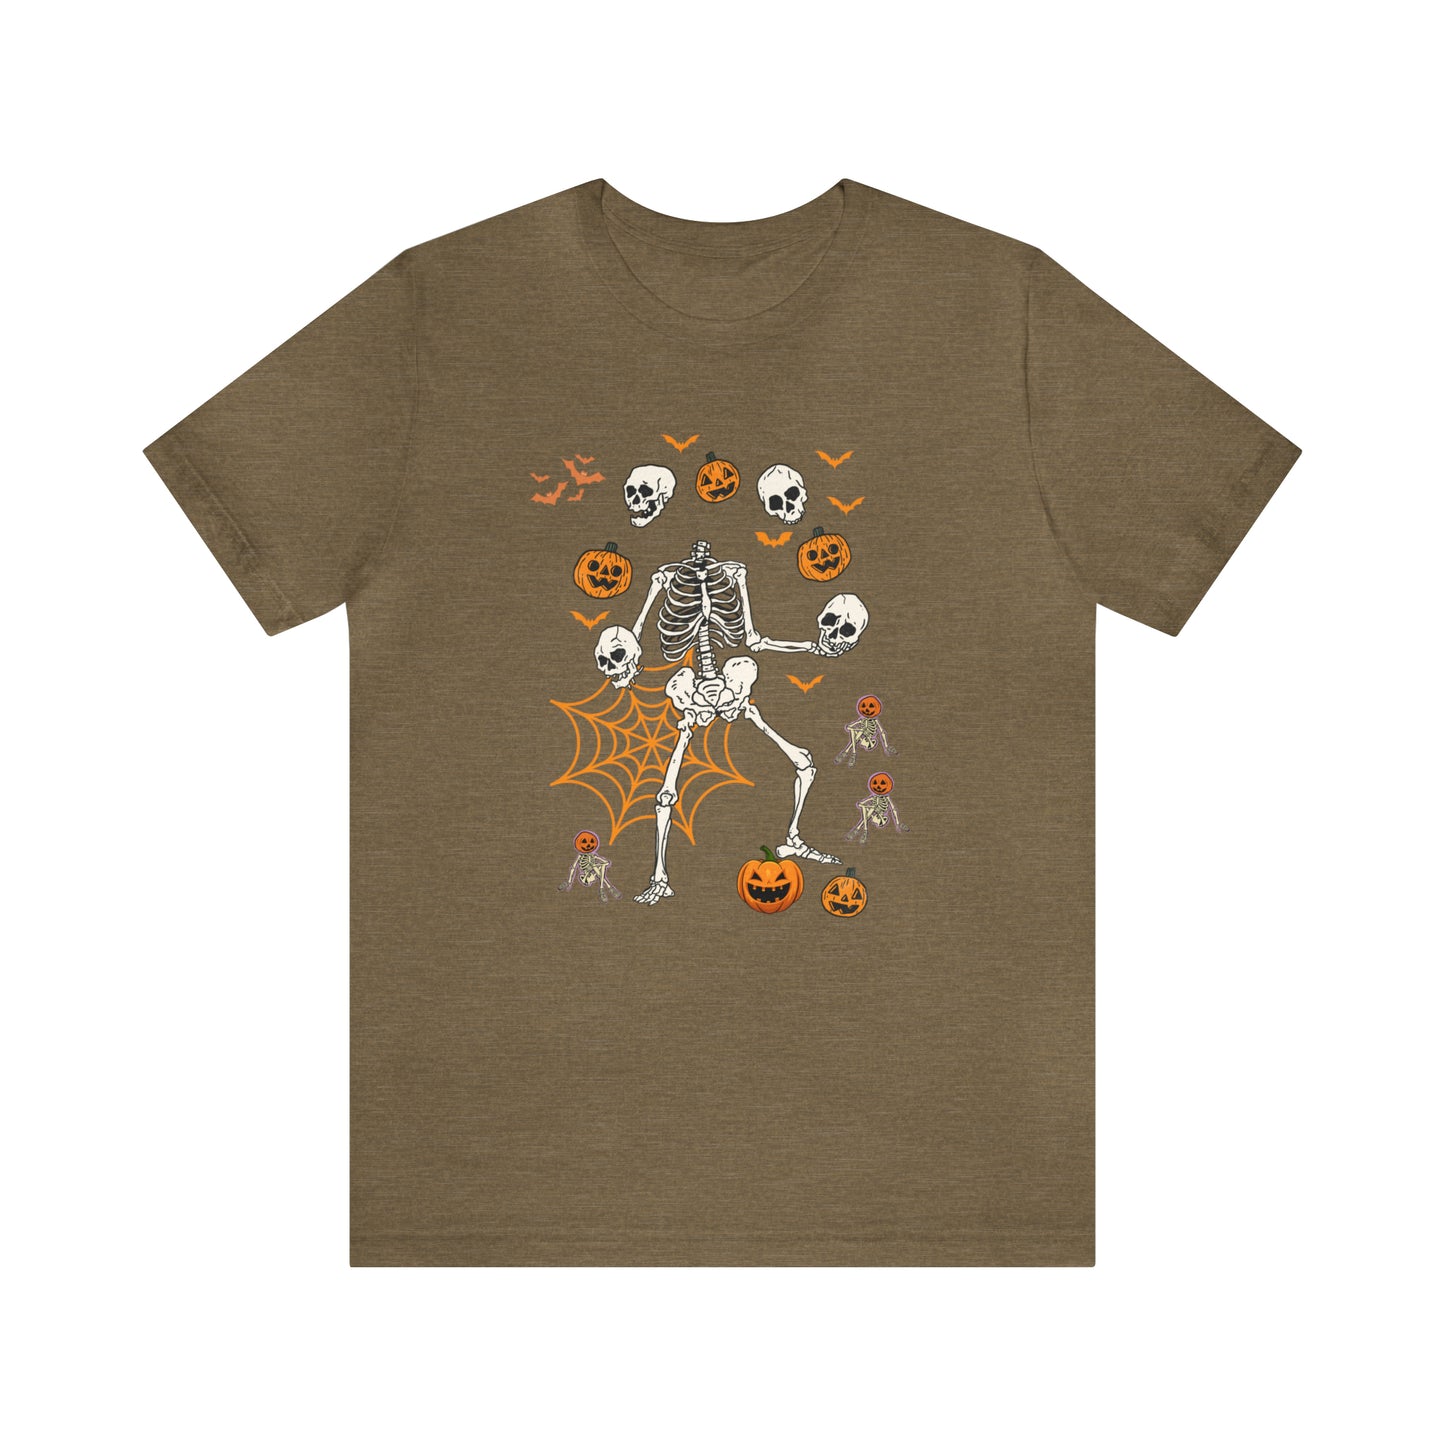 Dancing Pumpkin Skeleton Shirt, Pumpkin Face Shirt, Pumpkin Costume , Cute Pumpkin Shirt, Halloween Costume, Halloween Shirt, T731